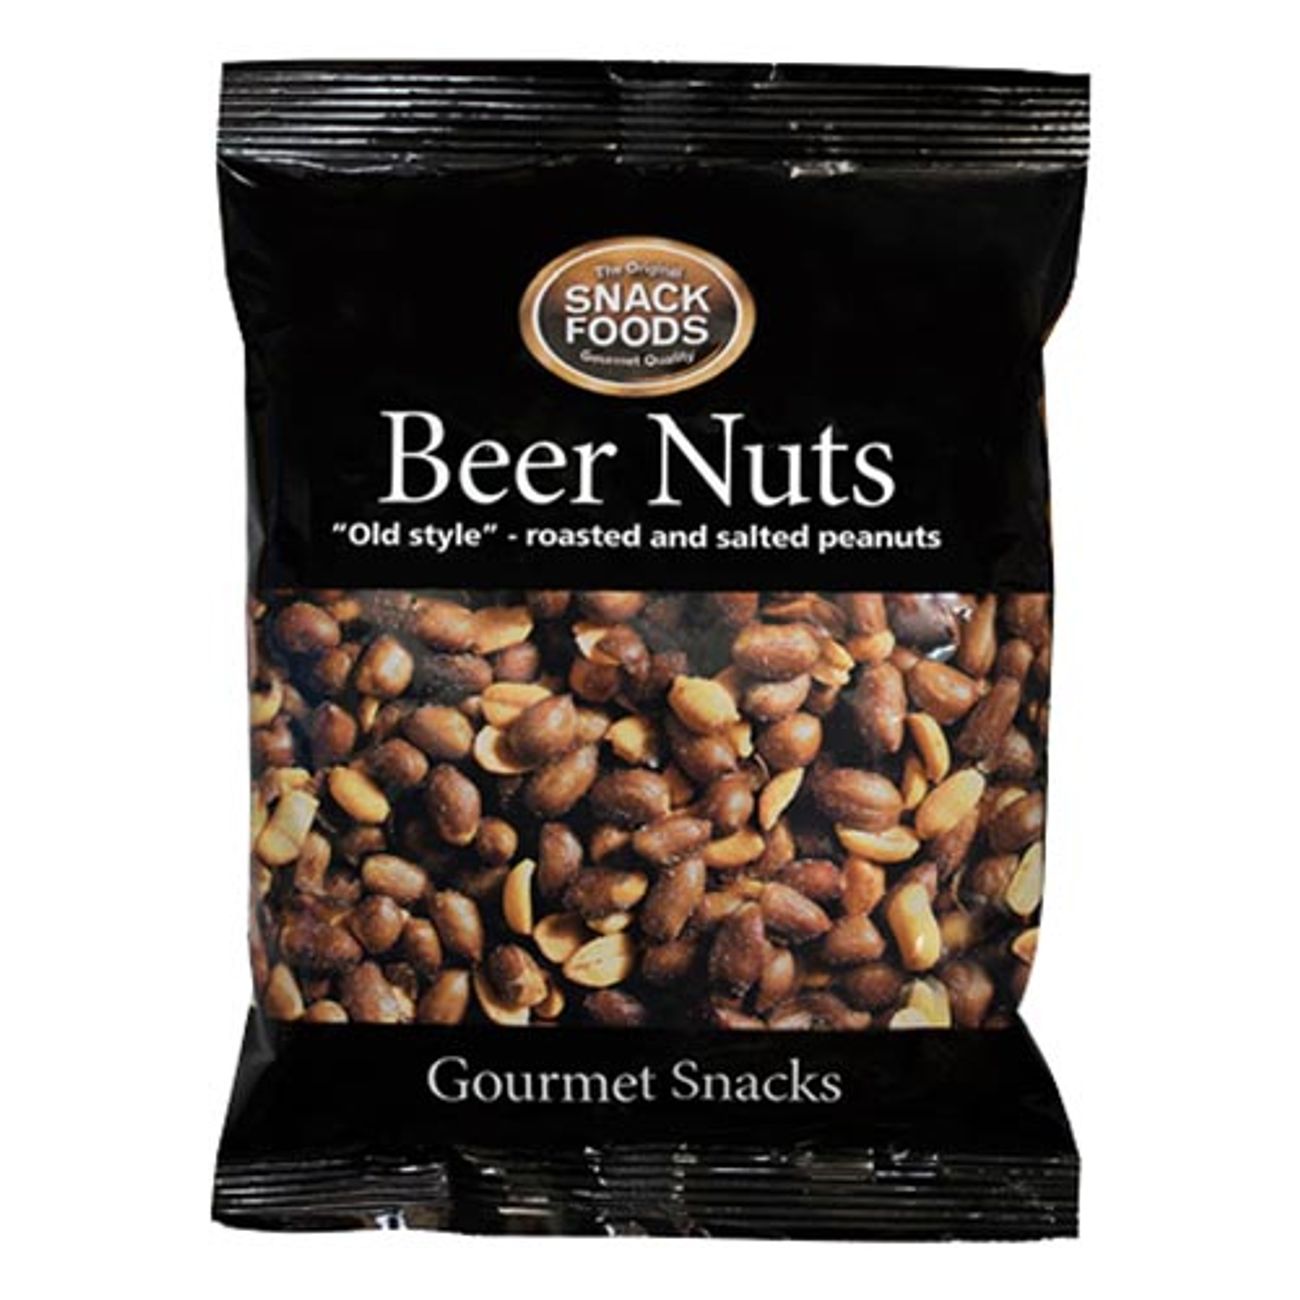 snack-foods-beer-nuts-1